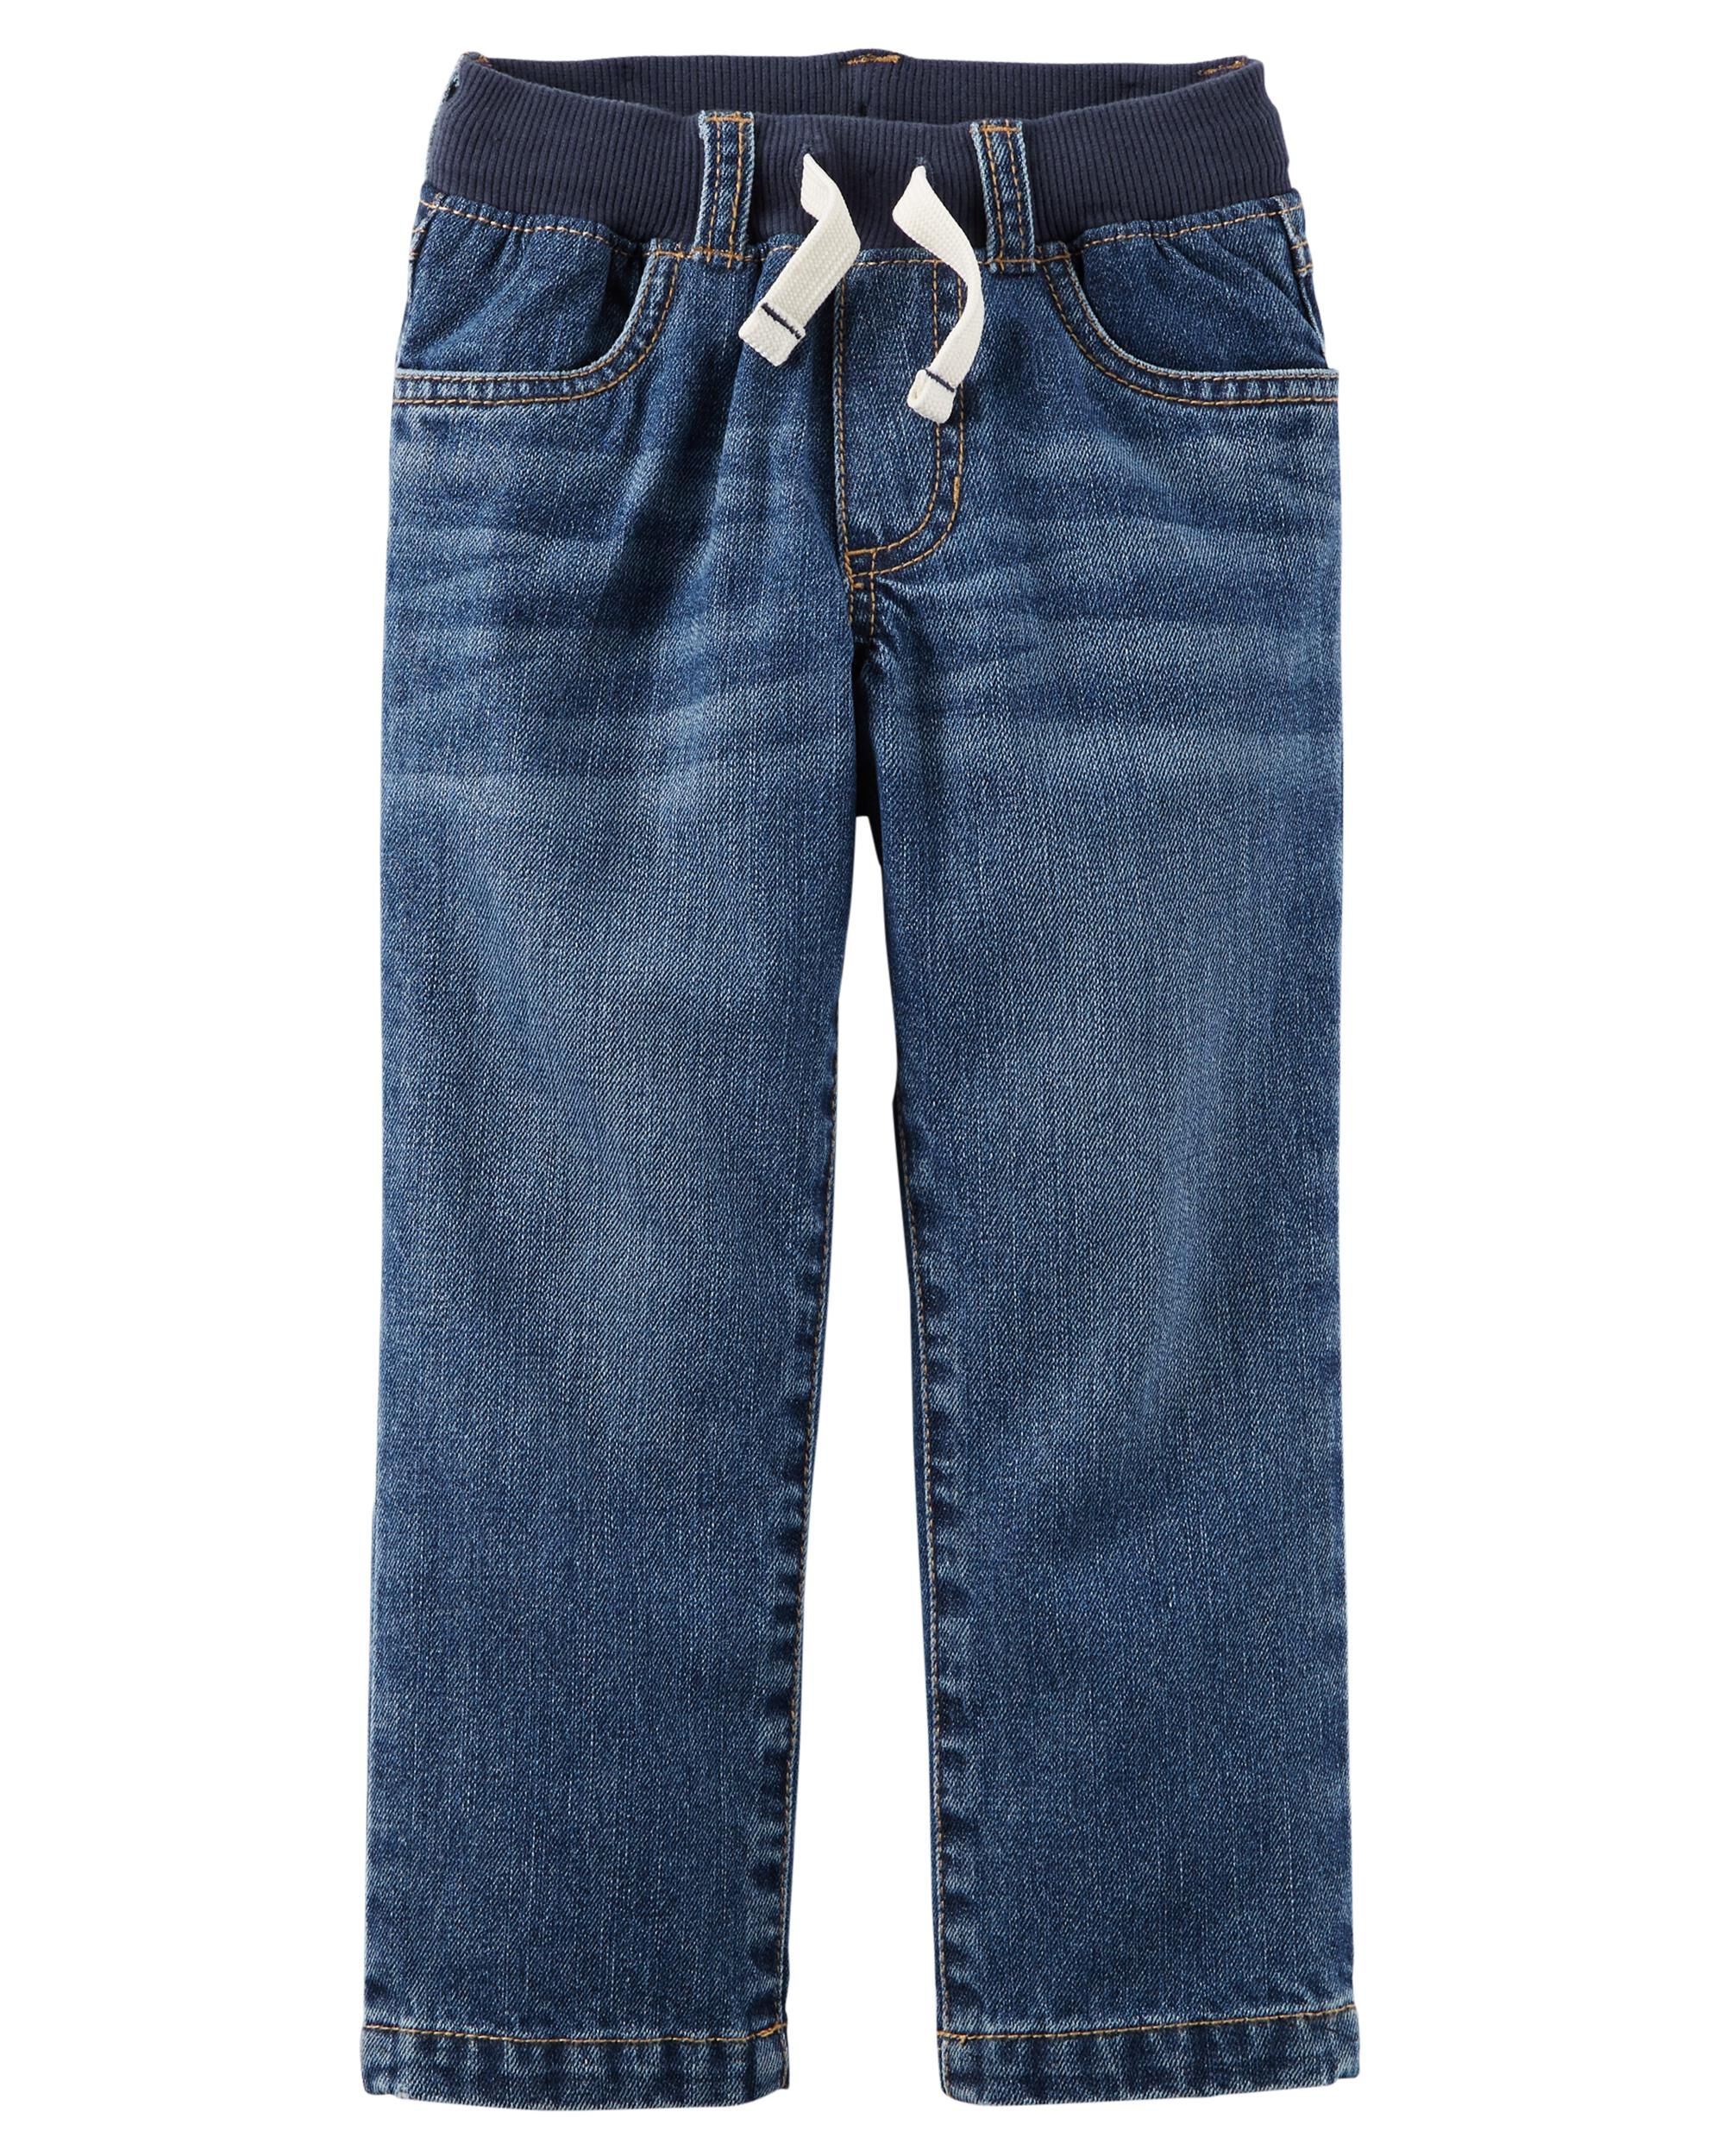 wrangler men's slim fit jeans